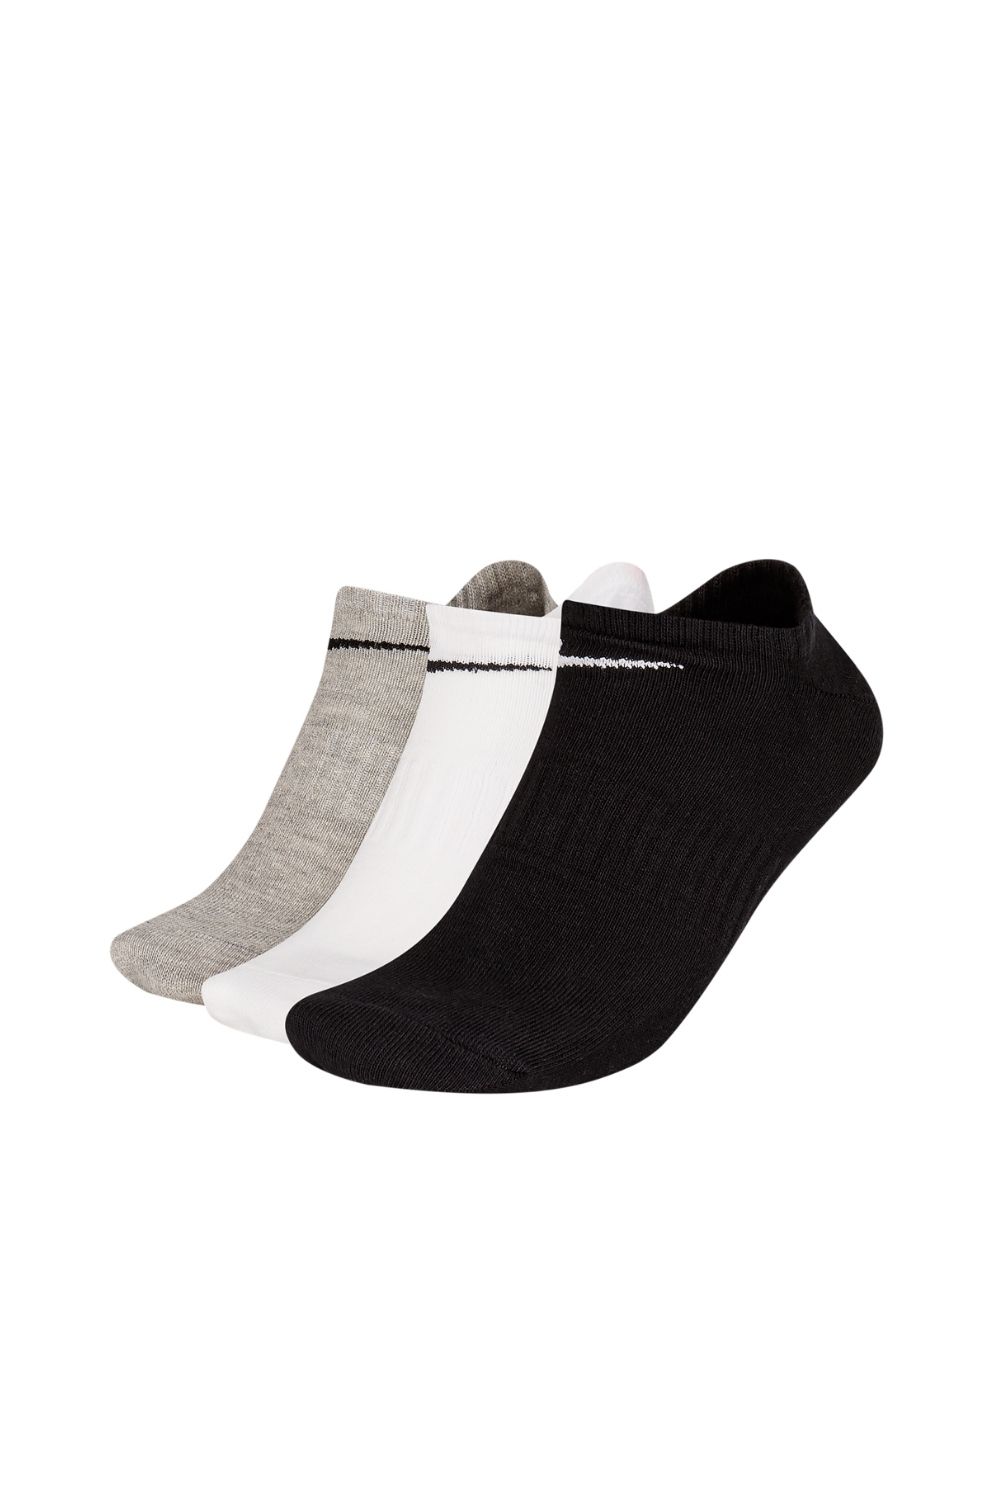 NIKE - Unisex κάλτσες σετ των 3 NIKE EVERYDAY LTWT μαύρο λευκό γκρι Γυναικεία/Αξεσουάρ/Κάλτσες